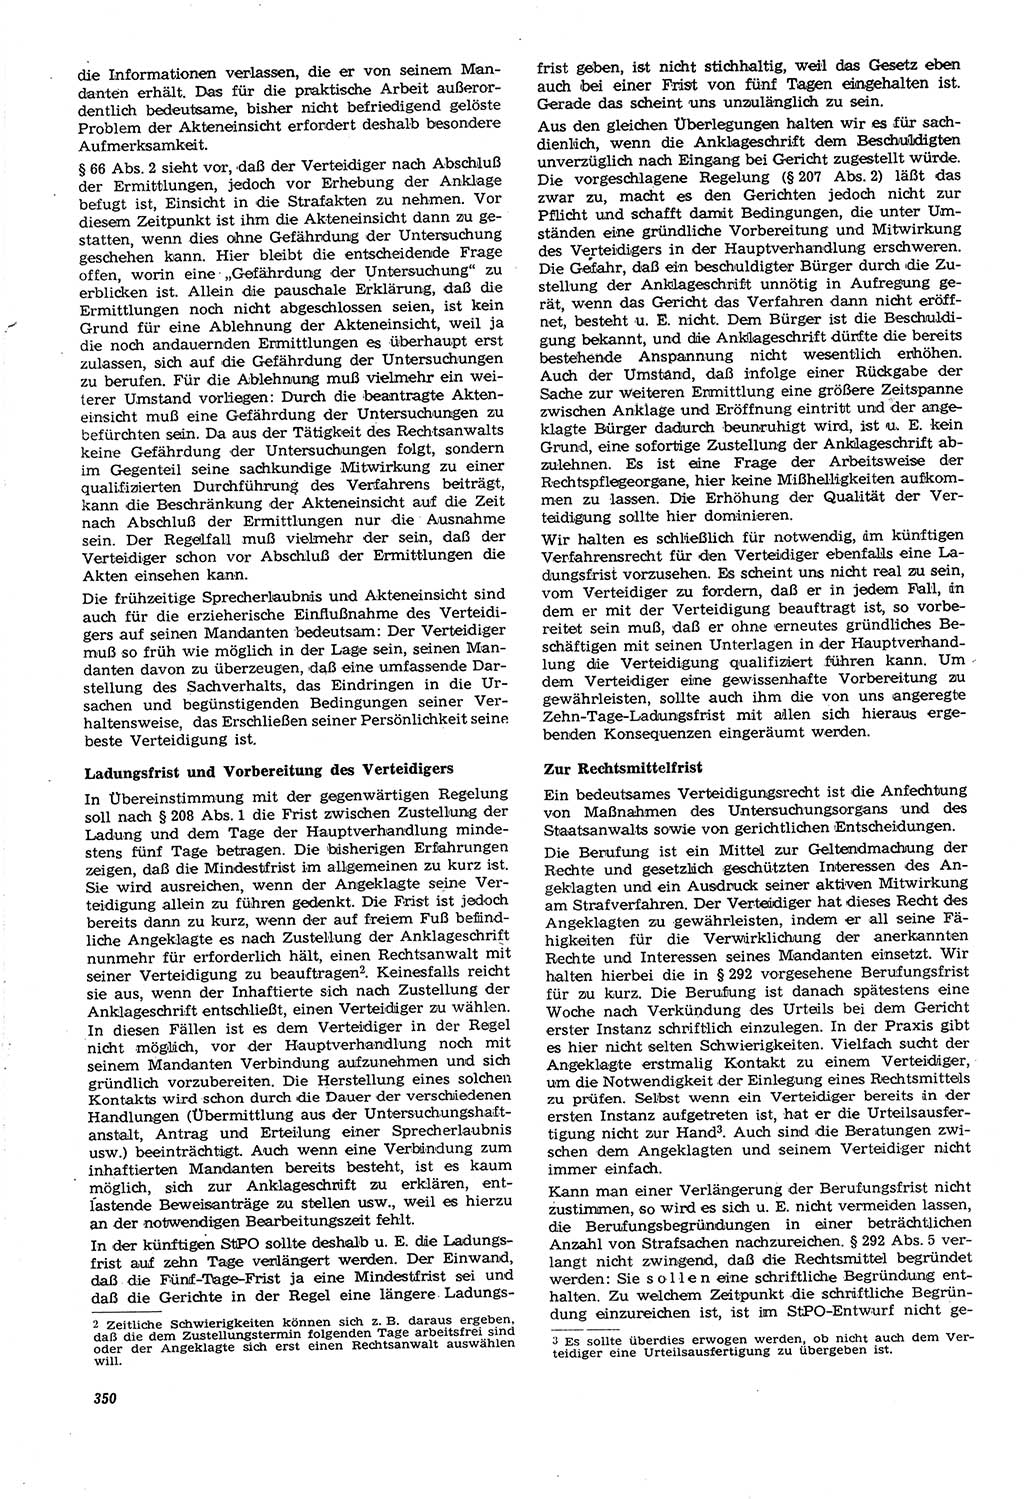 Neue Justiz (NJ), Zeitschrift für Recht und Rechtswissenschaft [Deutsche Demokratische Republik (DDR)], 21. Jahrgang 1967, Seite 350 (NJ DDR 1967, S. 350)